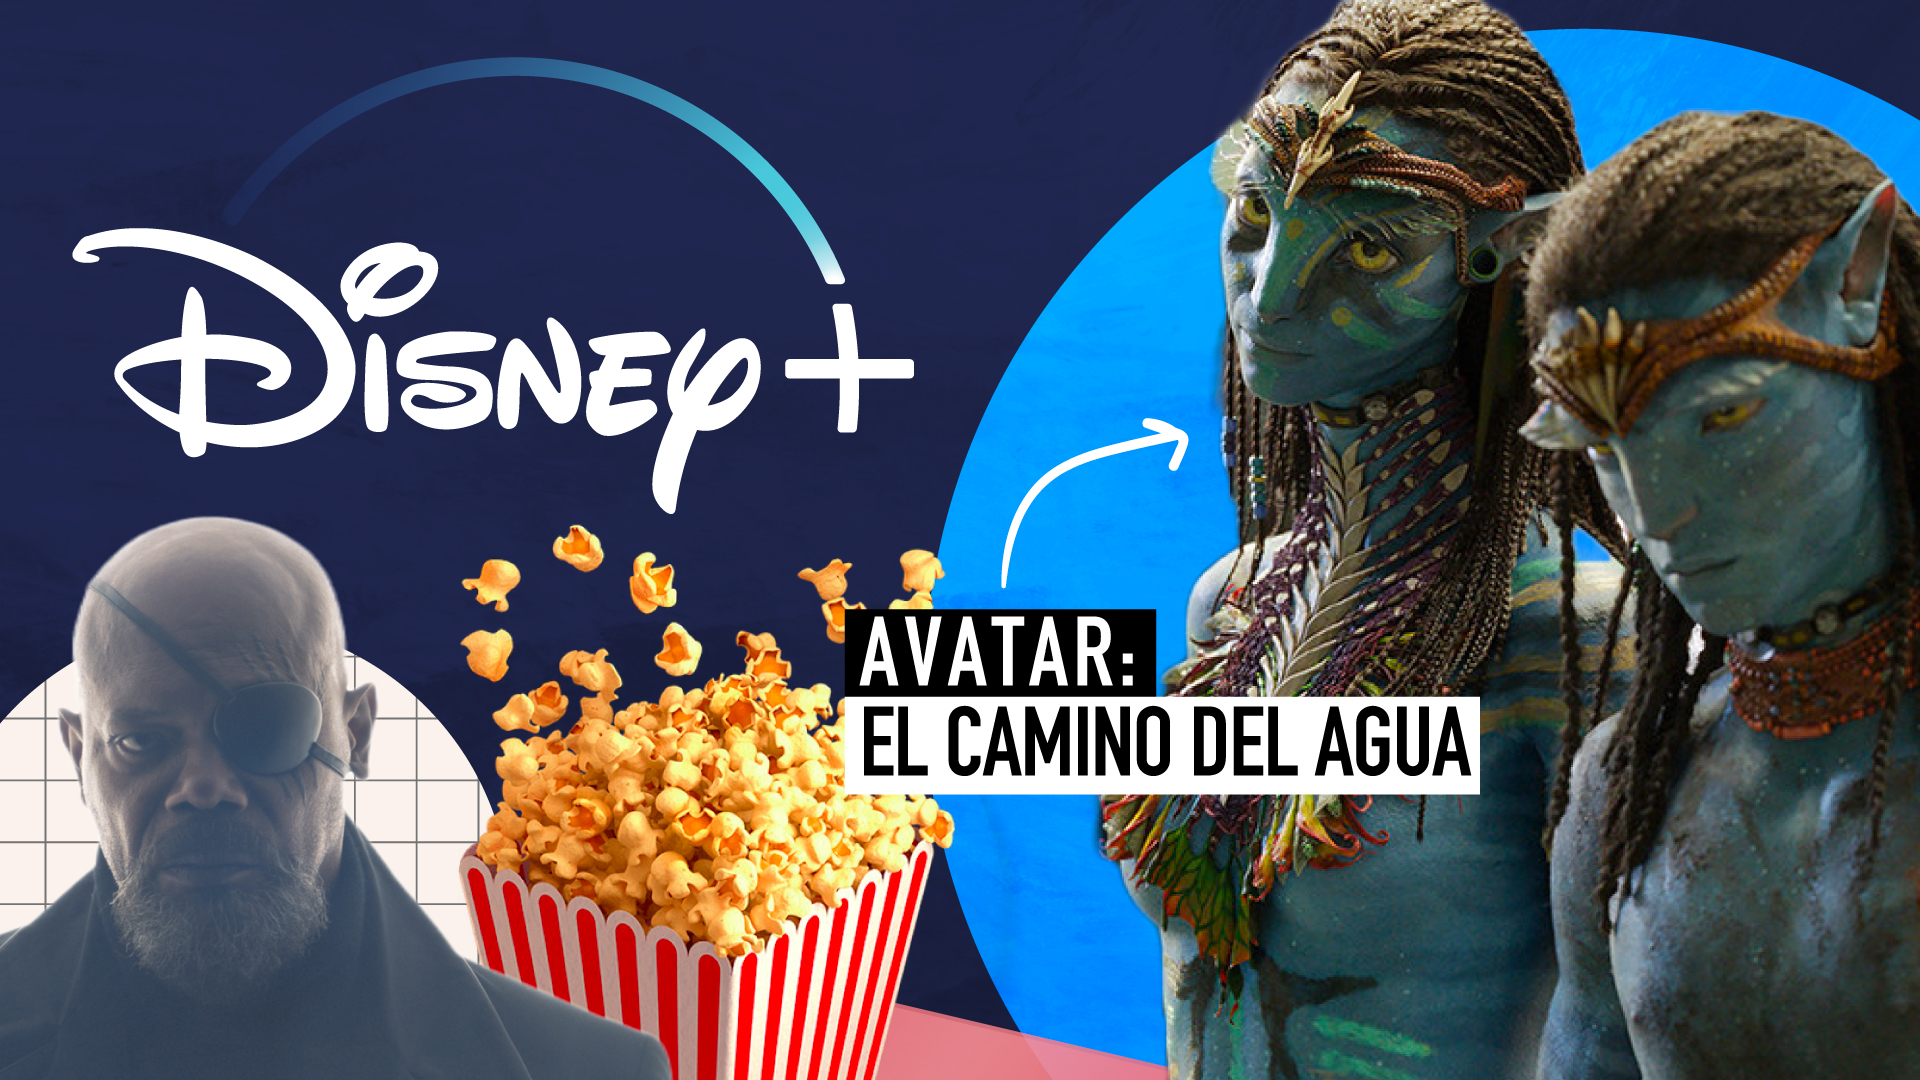 Estrenos de Disney+ en junio: “Invasión secreta”, “Avatar: el camino del agua” y más